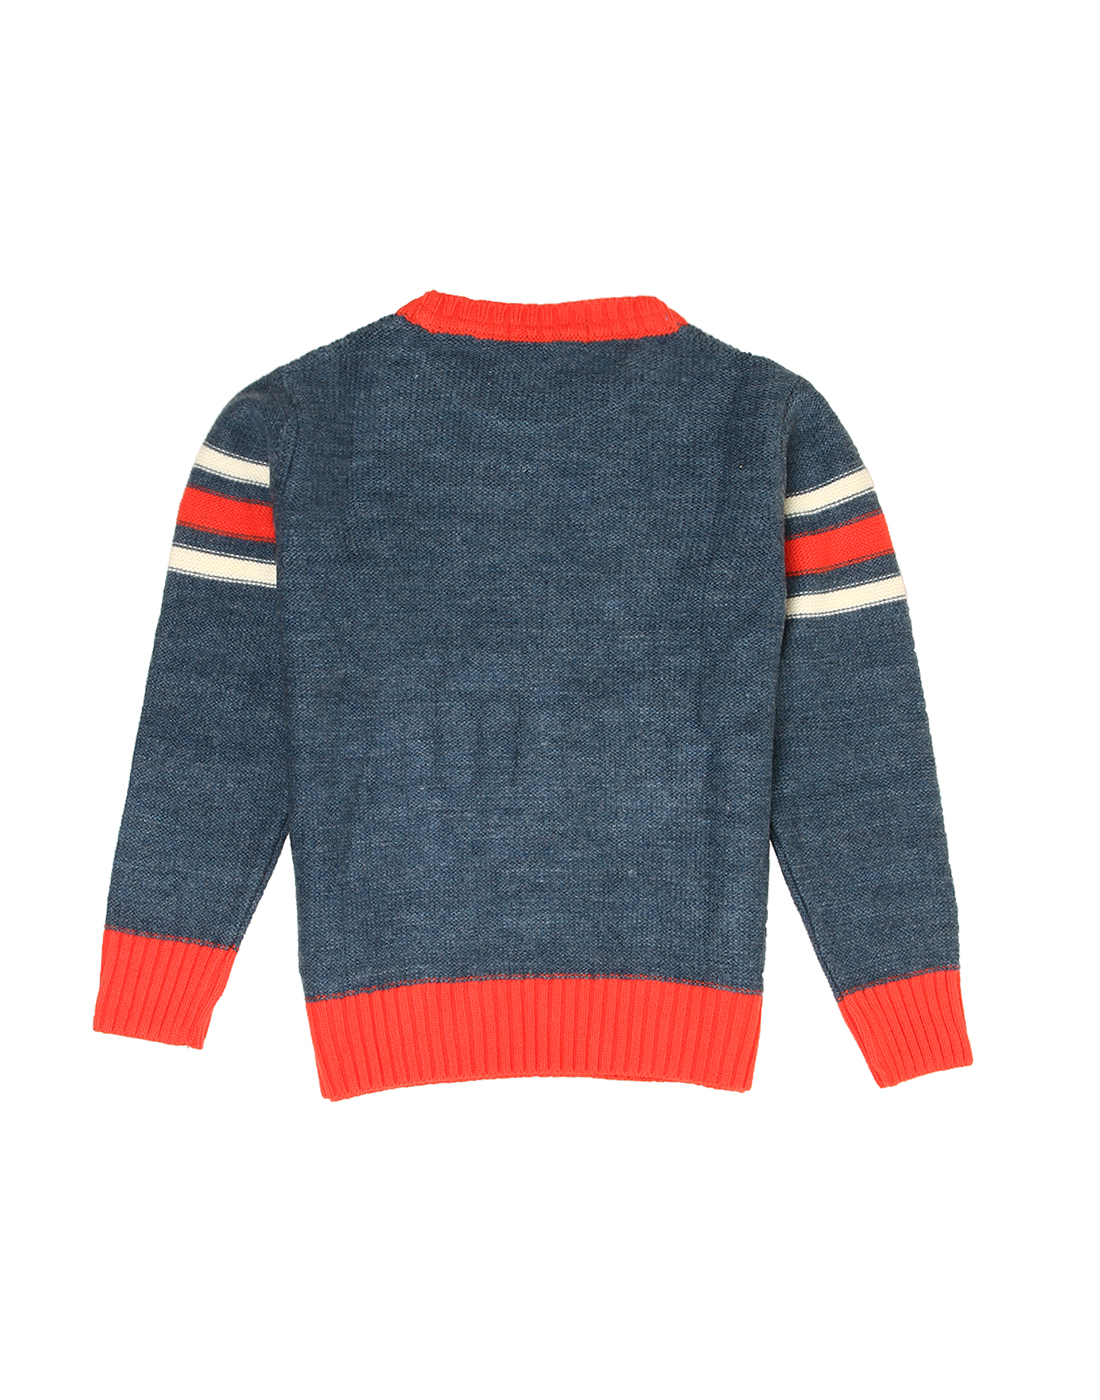 Wingsfield Boys Blue Sweater